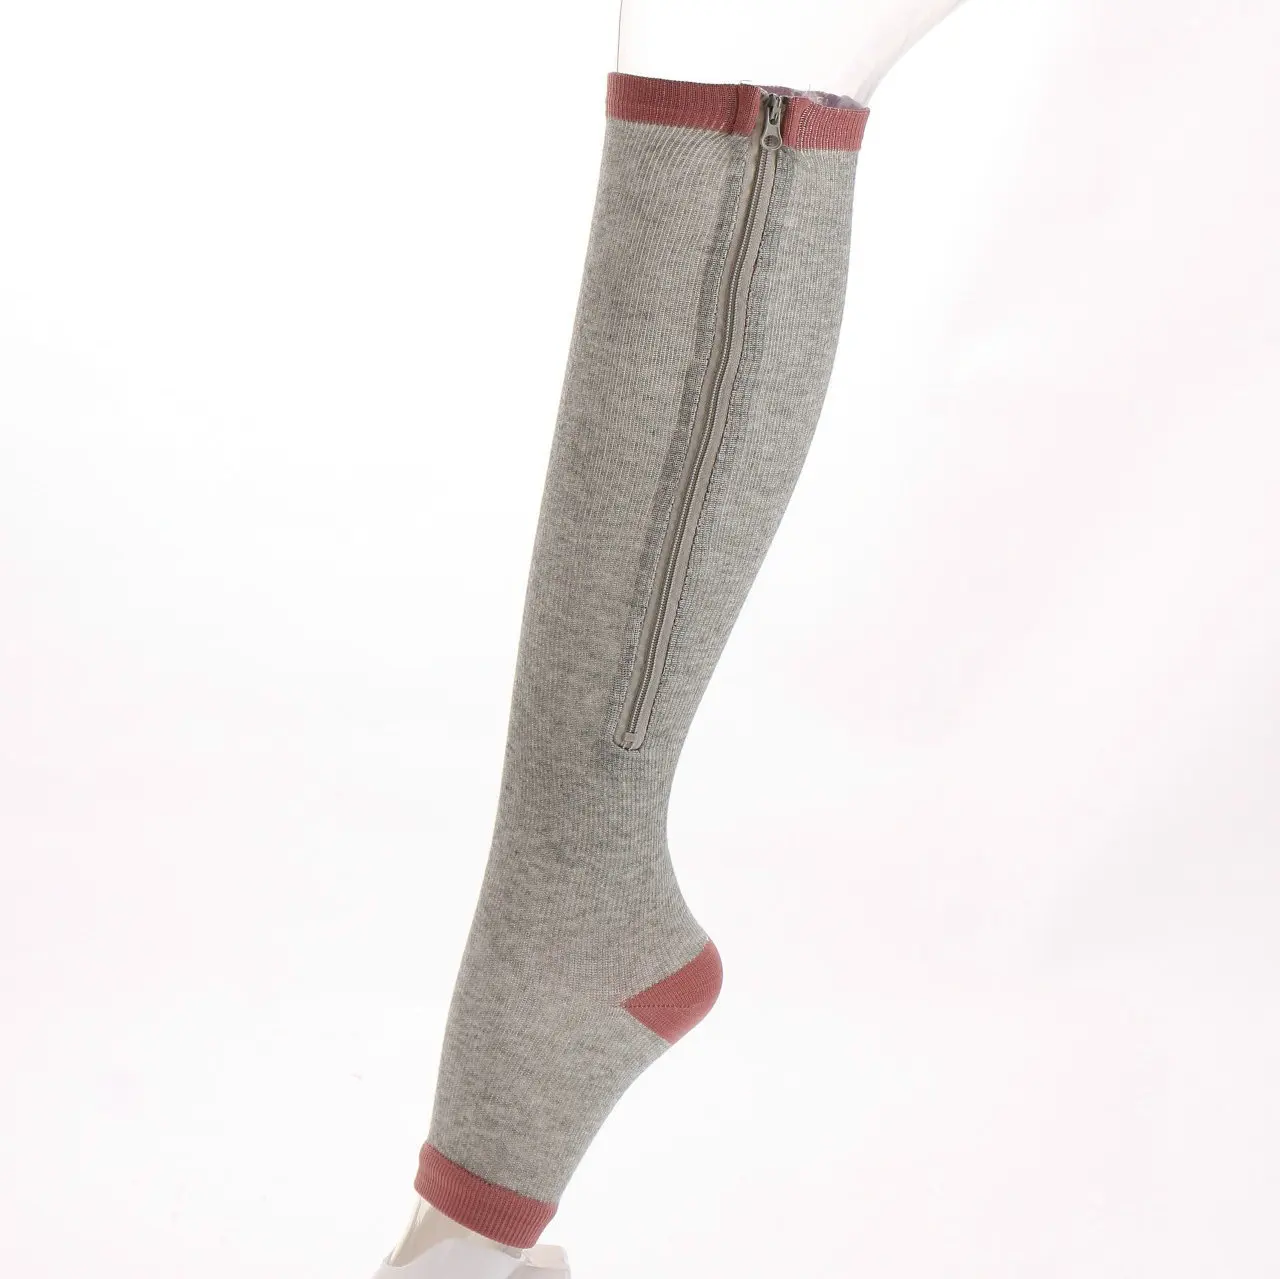 Спортивные носки на молнии мужские Компрессионные носки с открытым носком поддержка икр варикозное облегчение Анти-усталость Носки спортивные эластичные средства для ухода за ногами